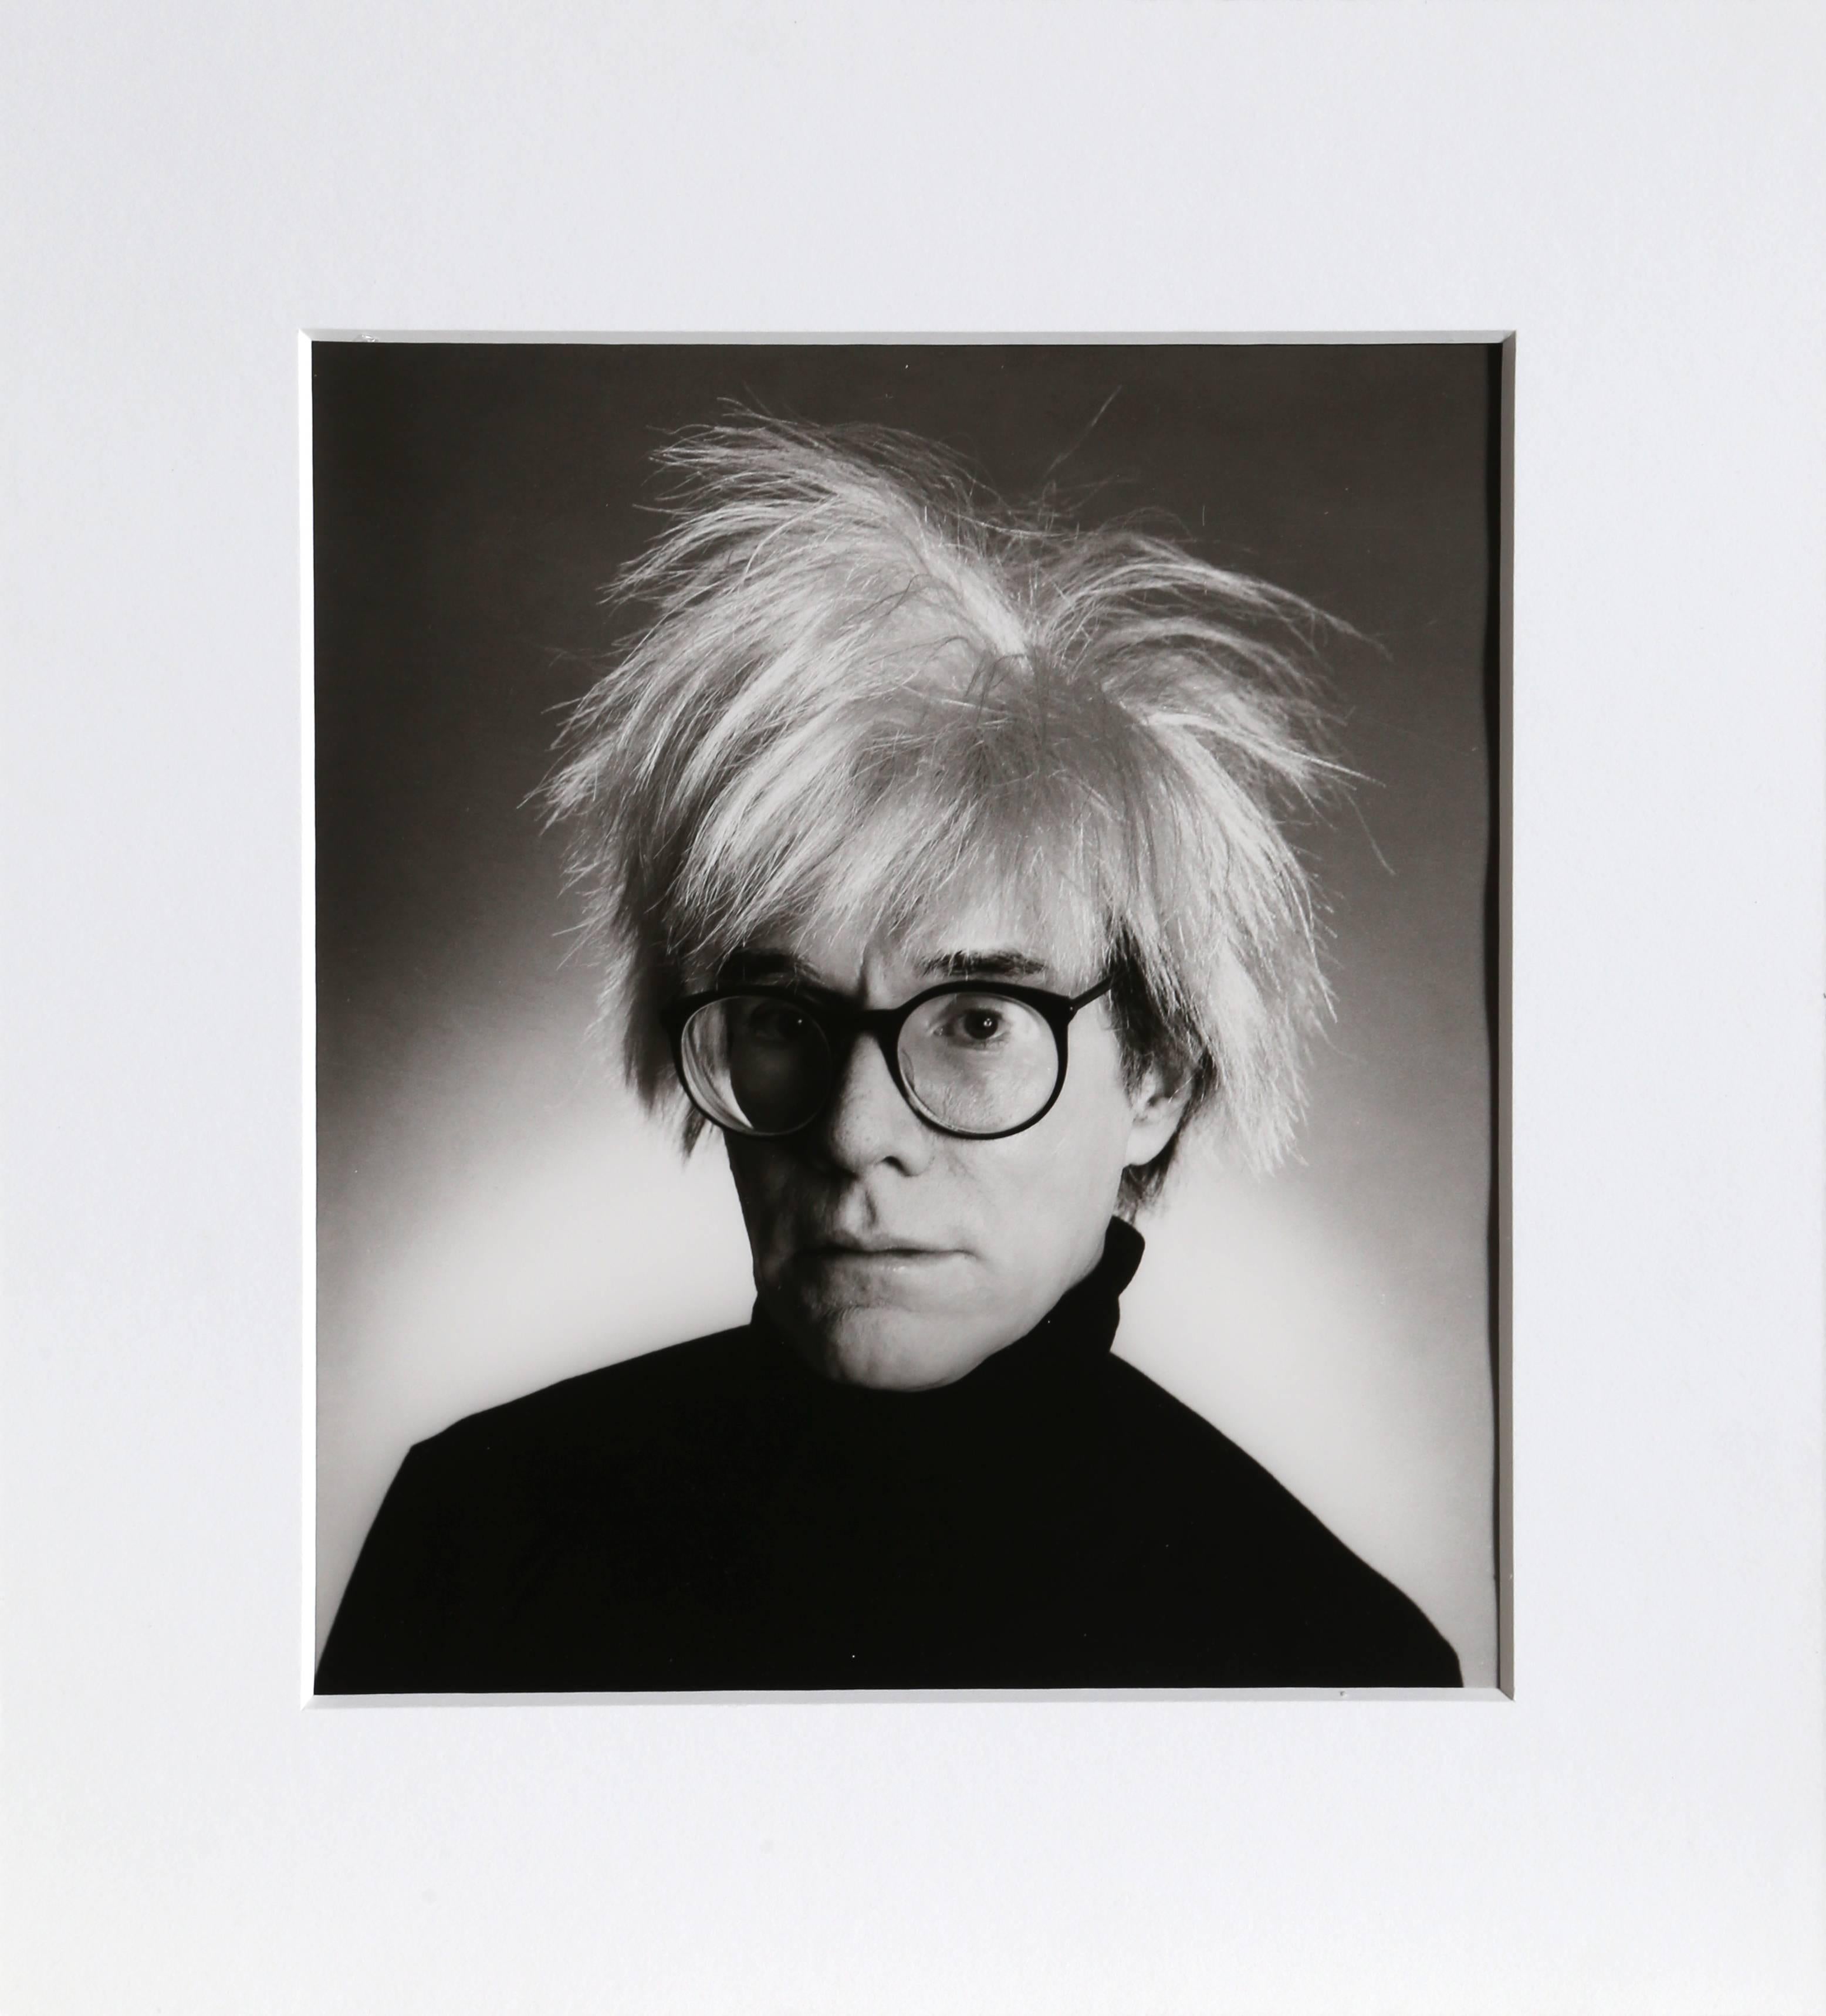 Artistics : Christopher Makos, Américain (1948 - )
Titre : Andy Warhol avec des lunettes
Année : 1986 (imprimé en 1989)
Support : Impression à la gélatine argentique, signée, tamponnée et numérotée au verso
Edition : 15/30
Taille de l'image : 10.5 x